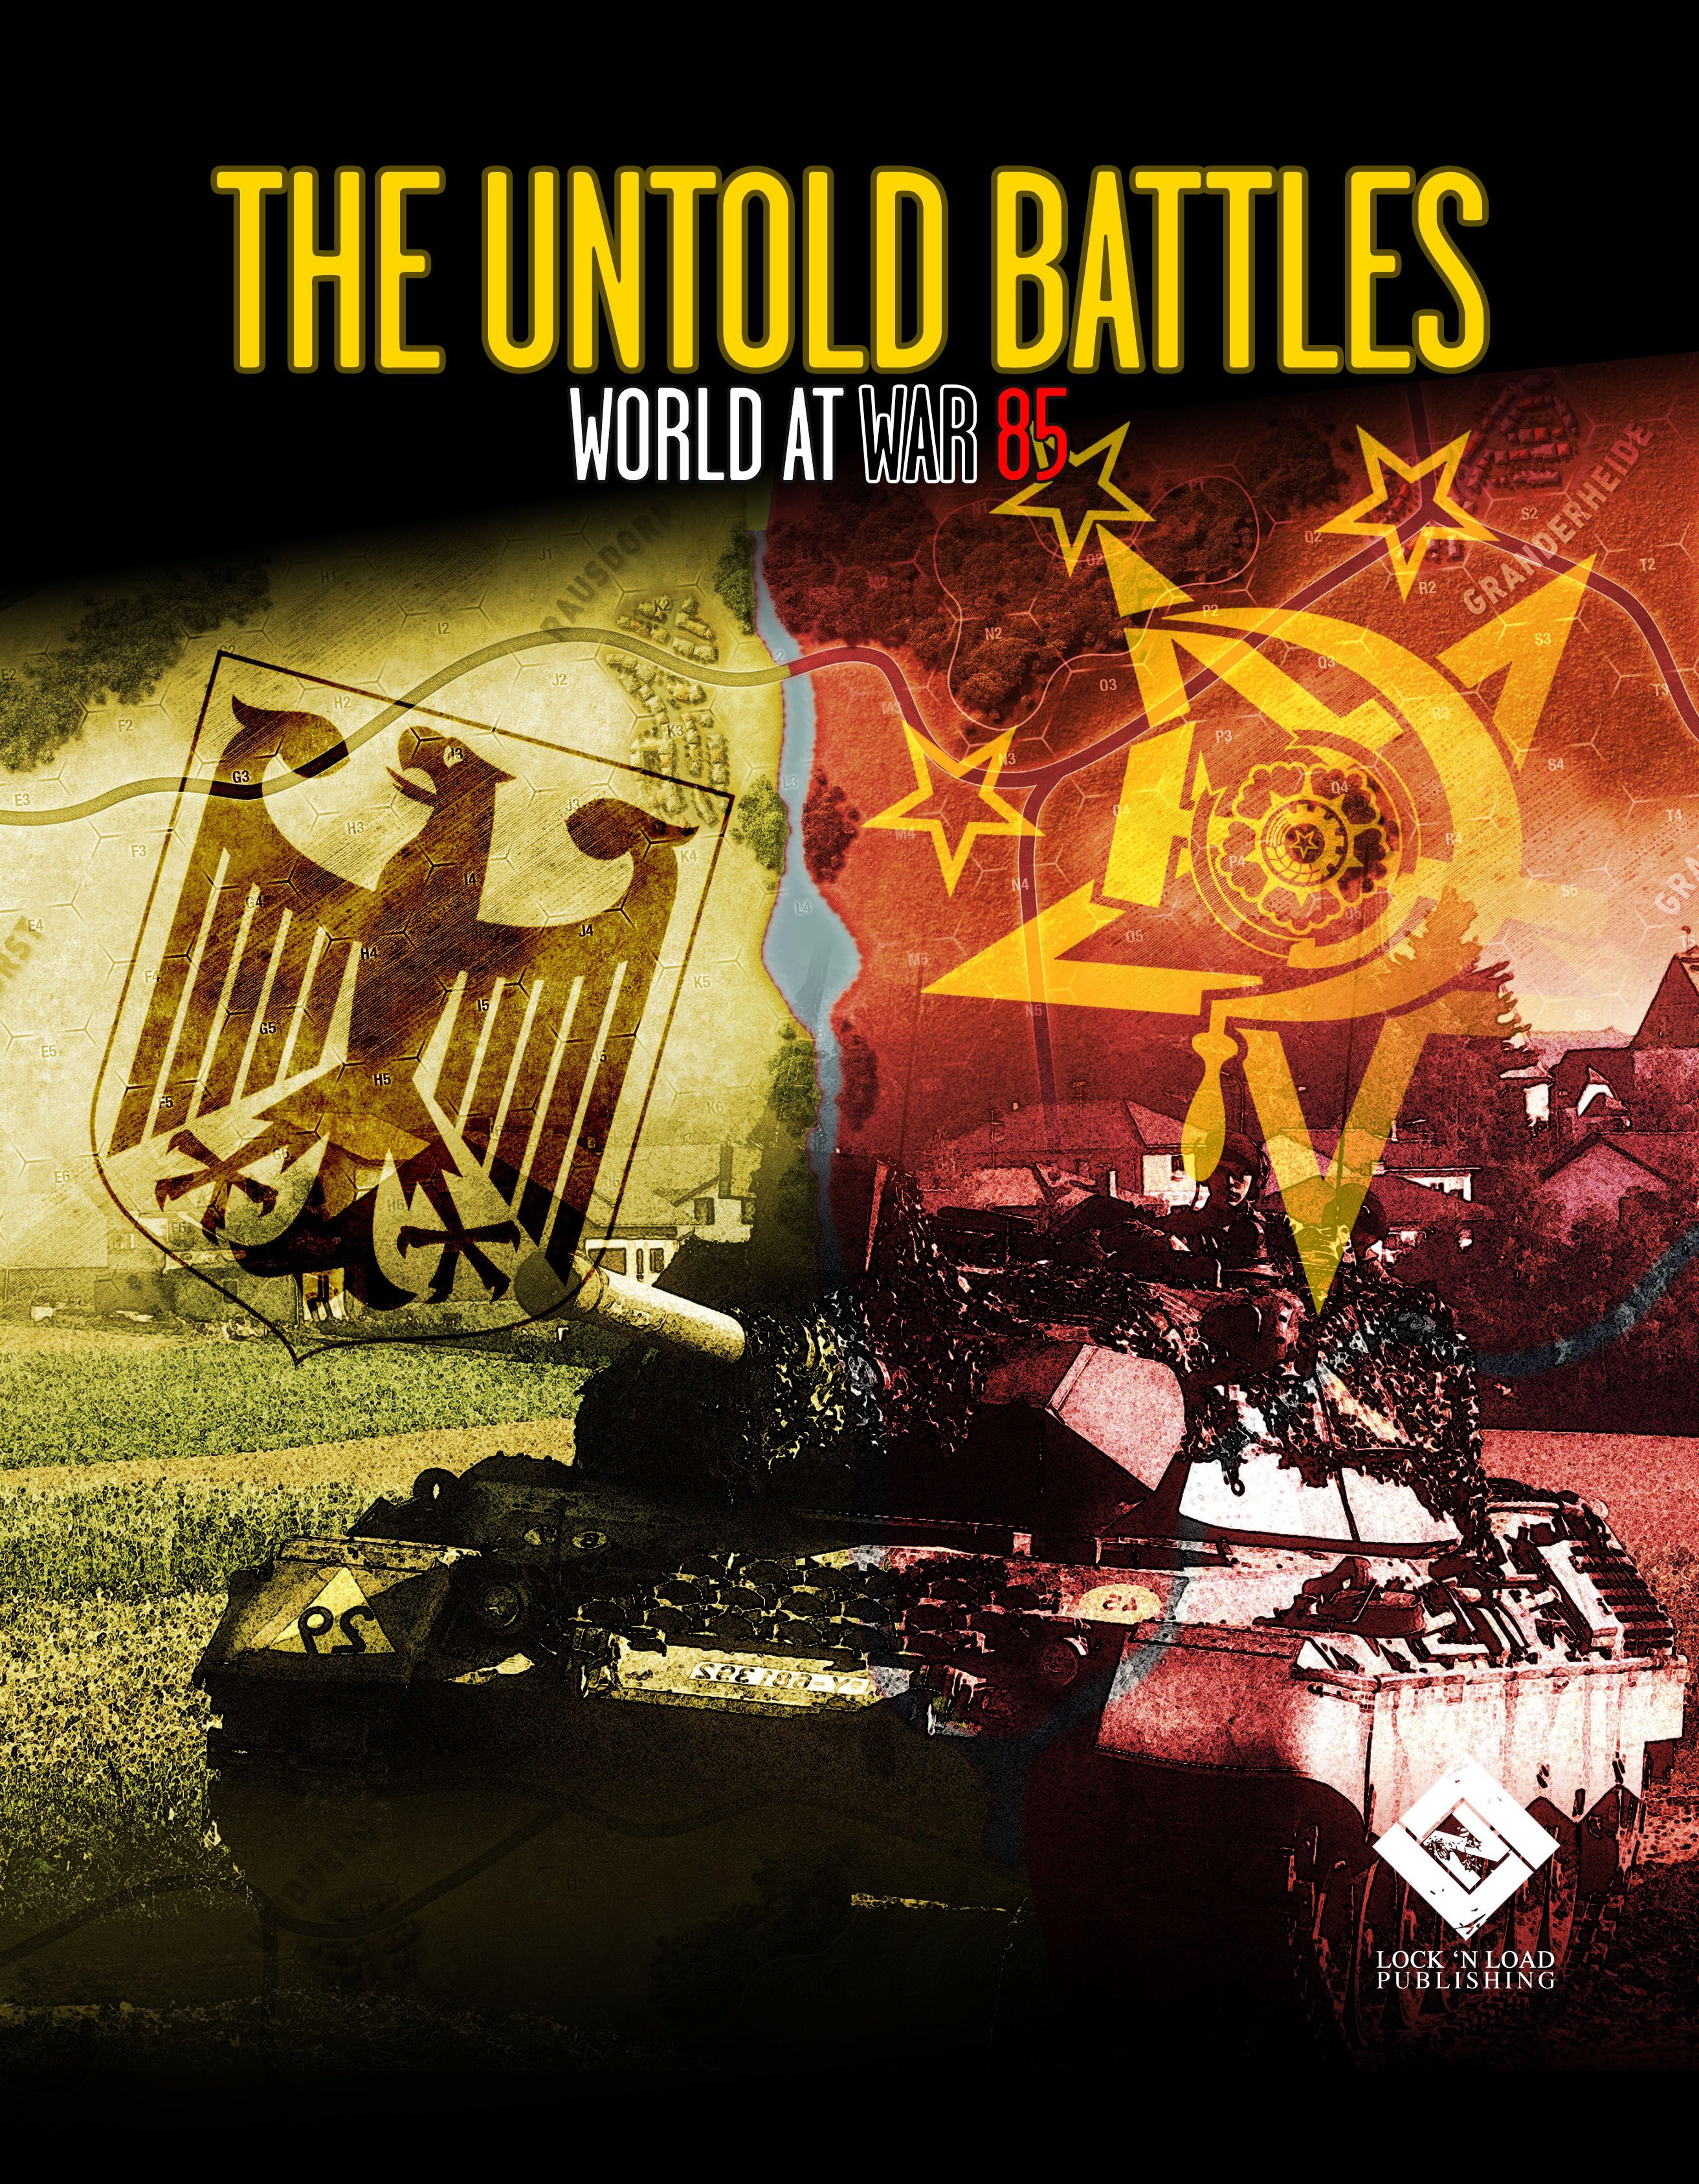 World At War 85: The Untold Battles